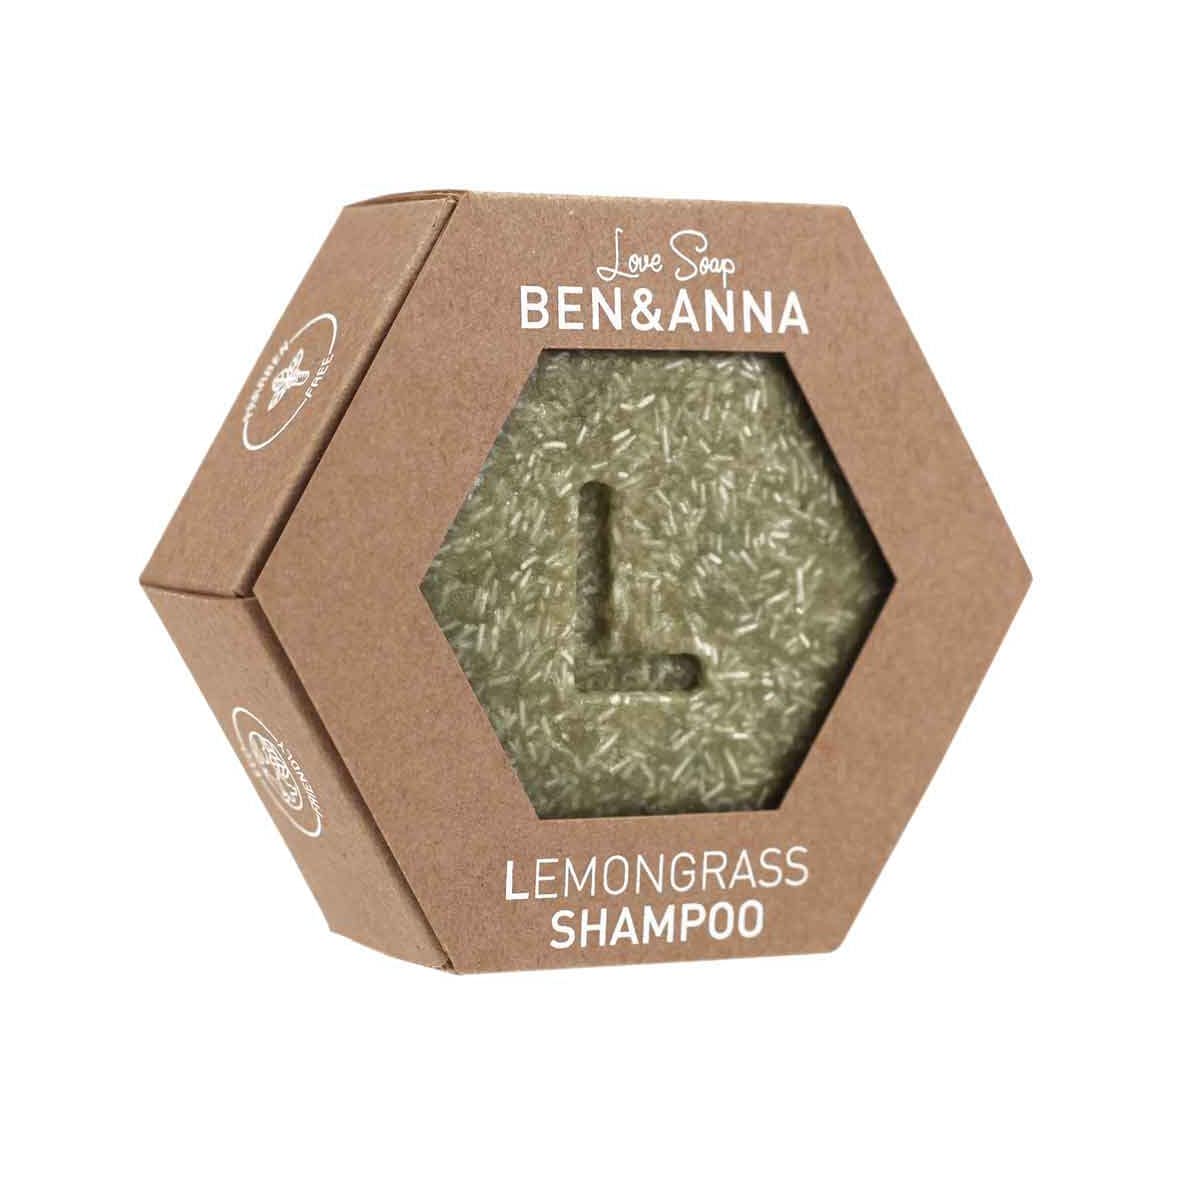 Lemongrass Shampoo 60g